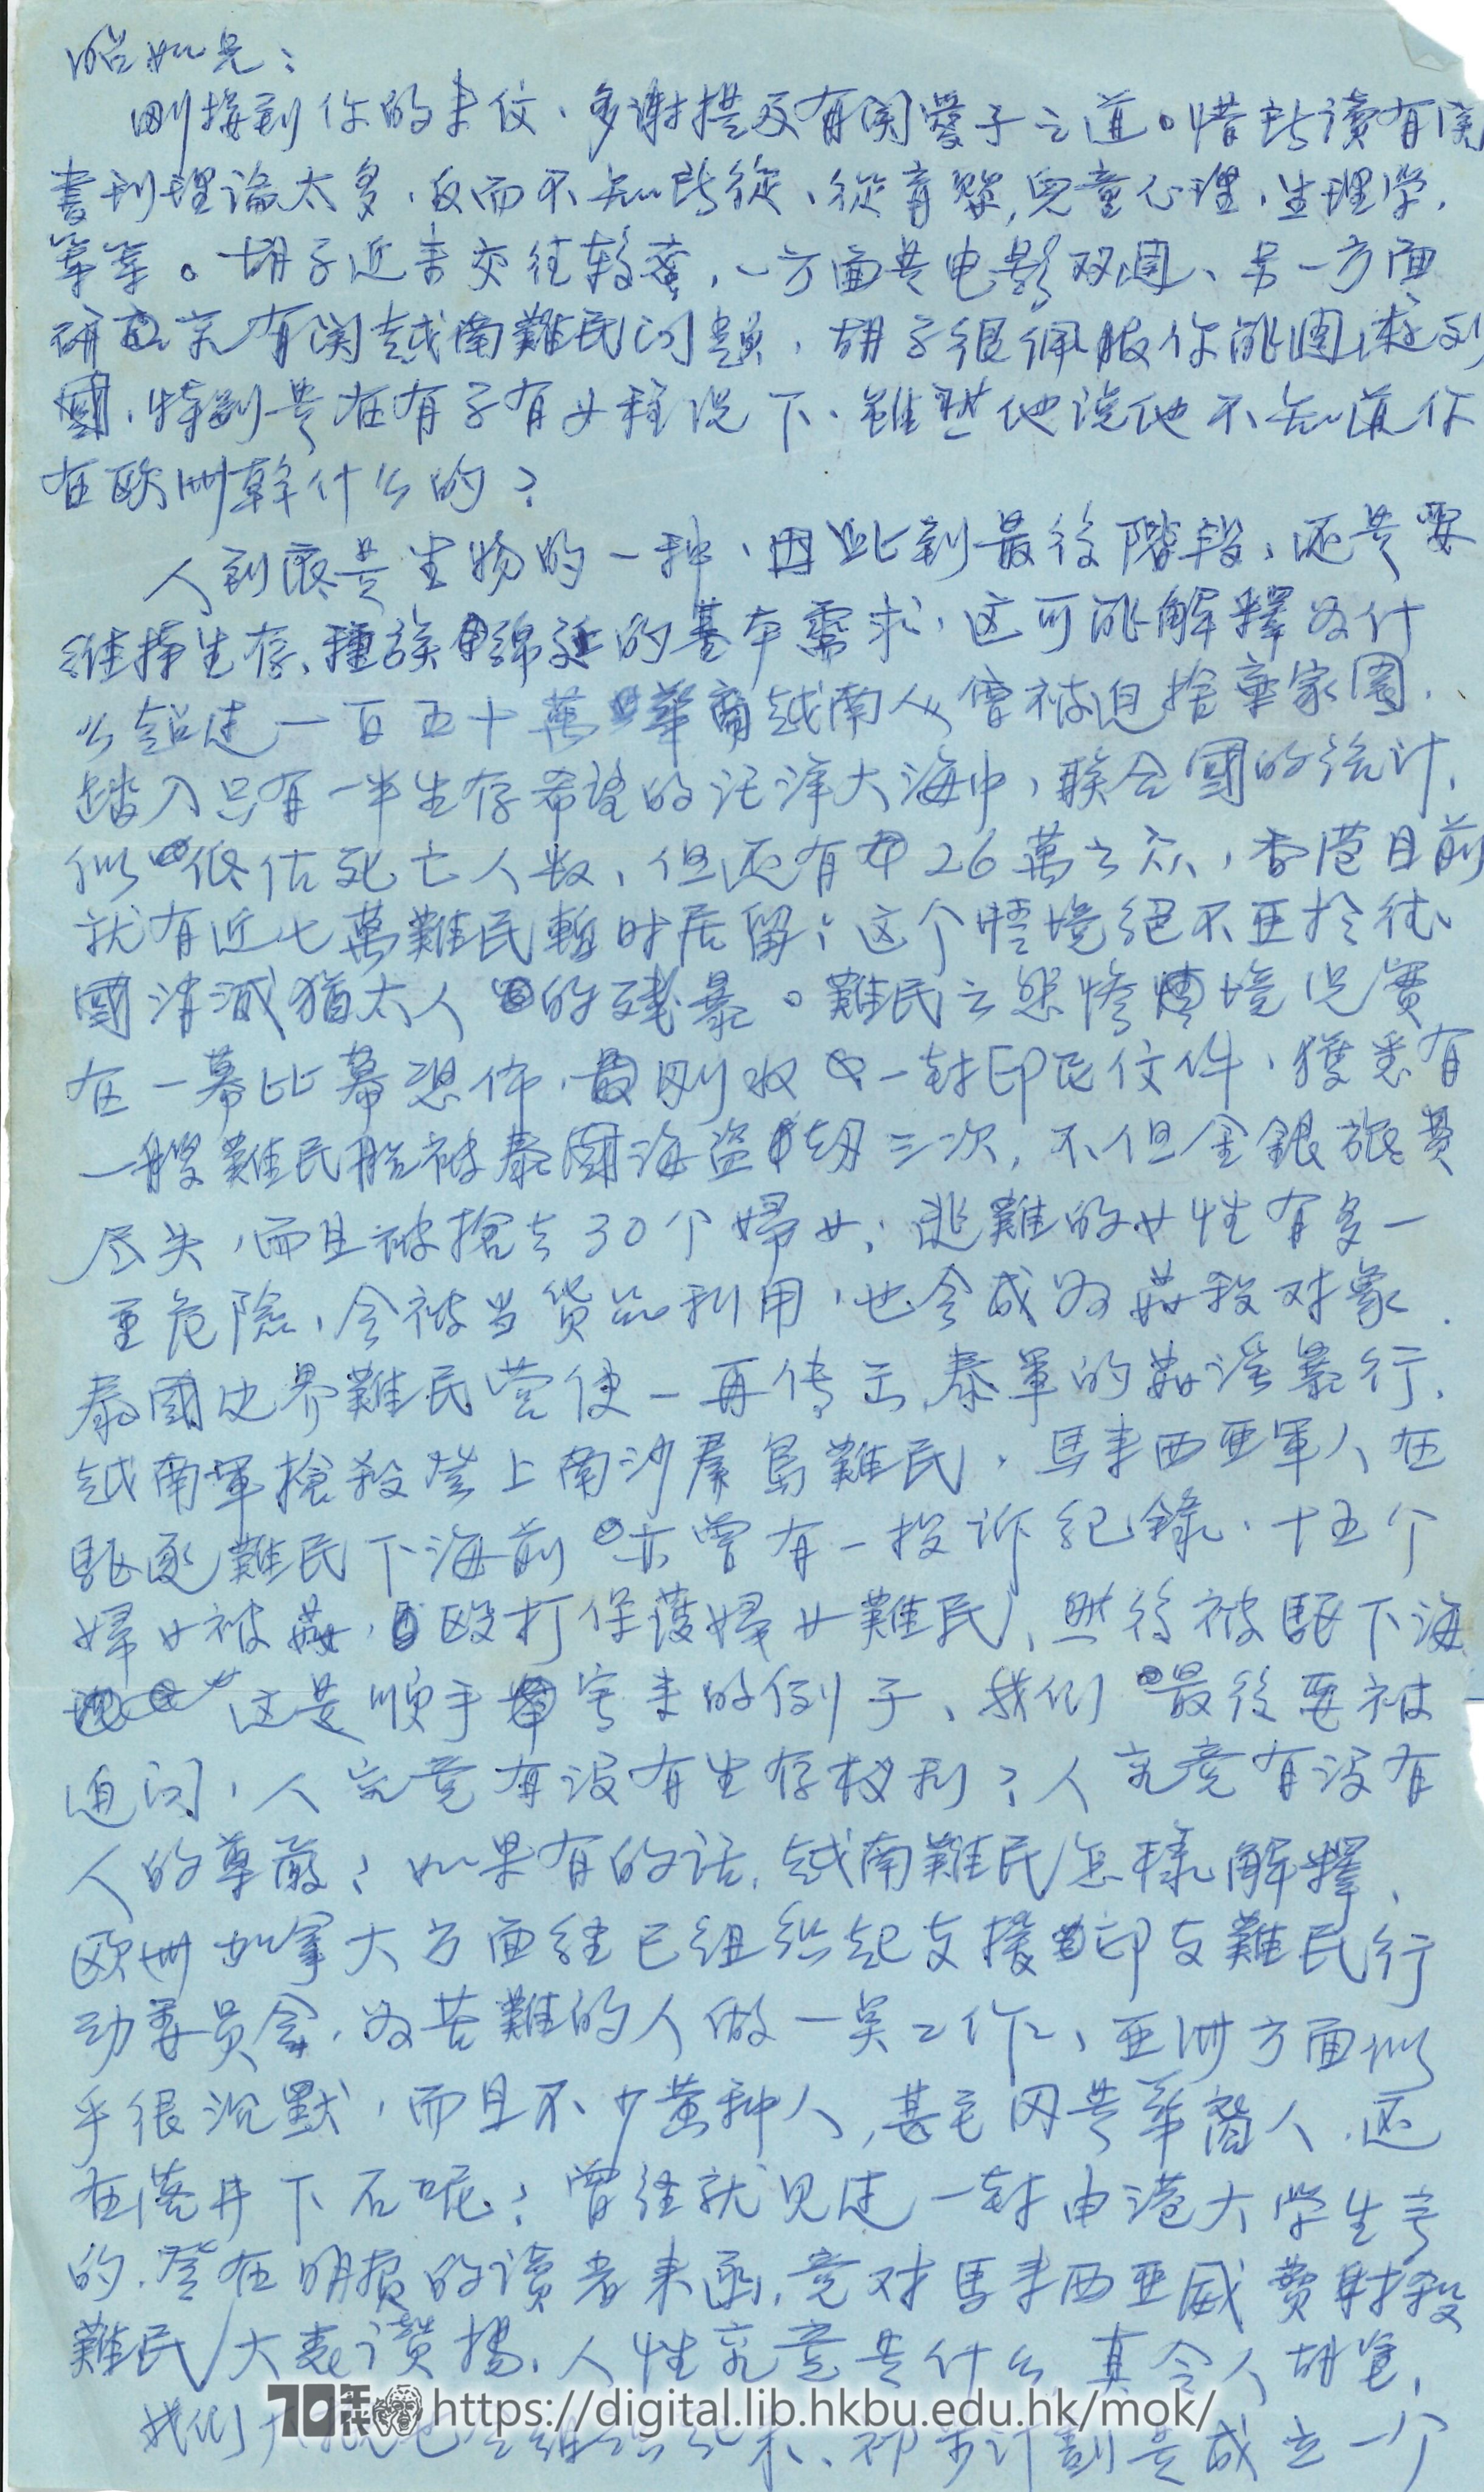   Letter from Chan Ching-wai to Mok Chiu Yu 陳清偉 